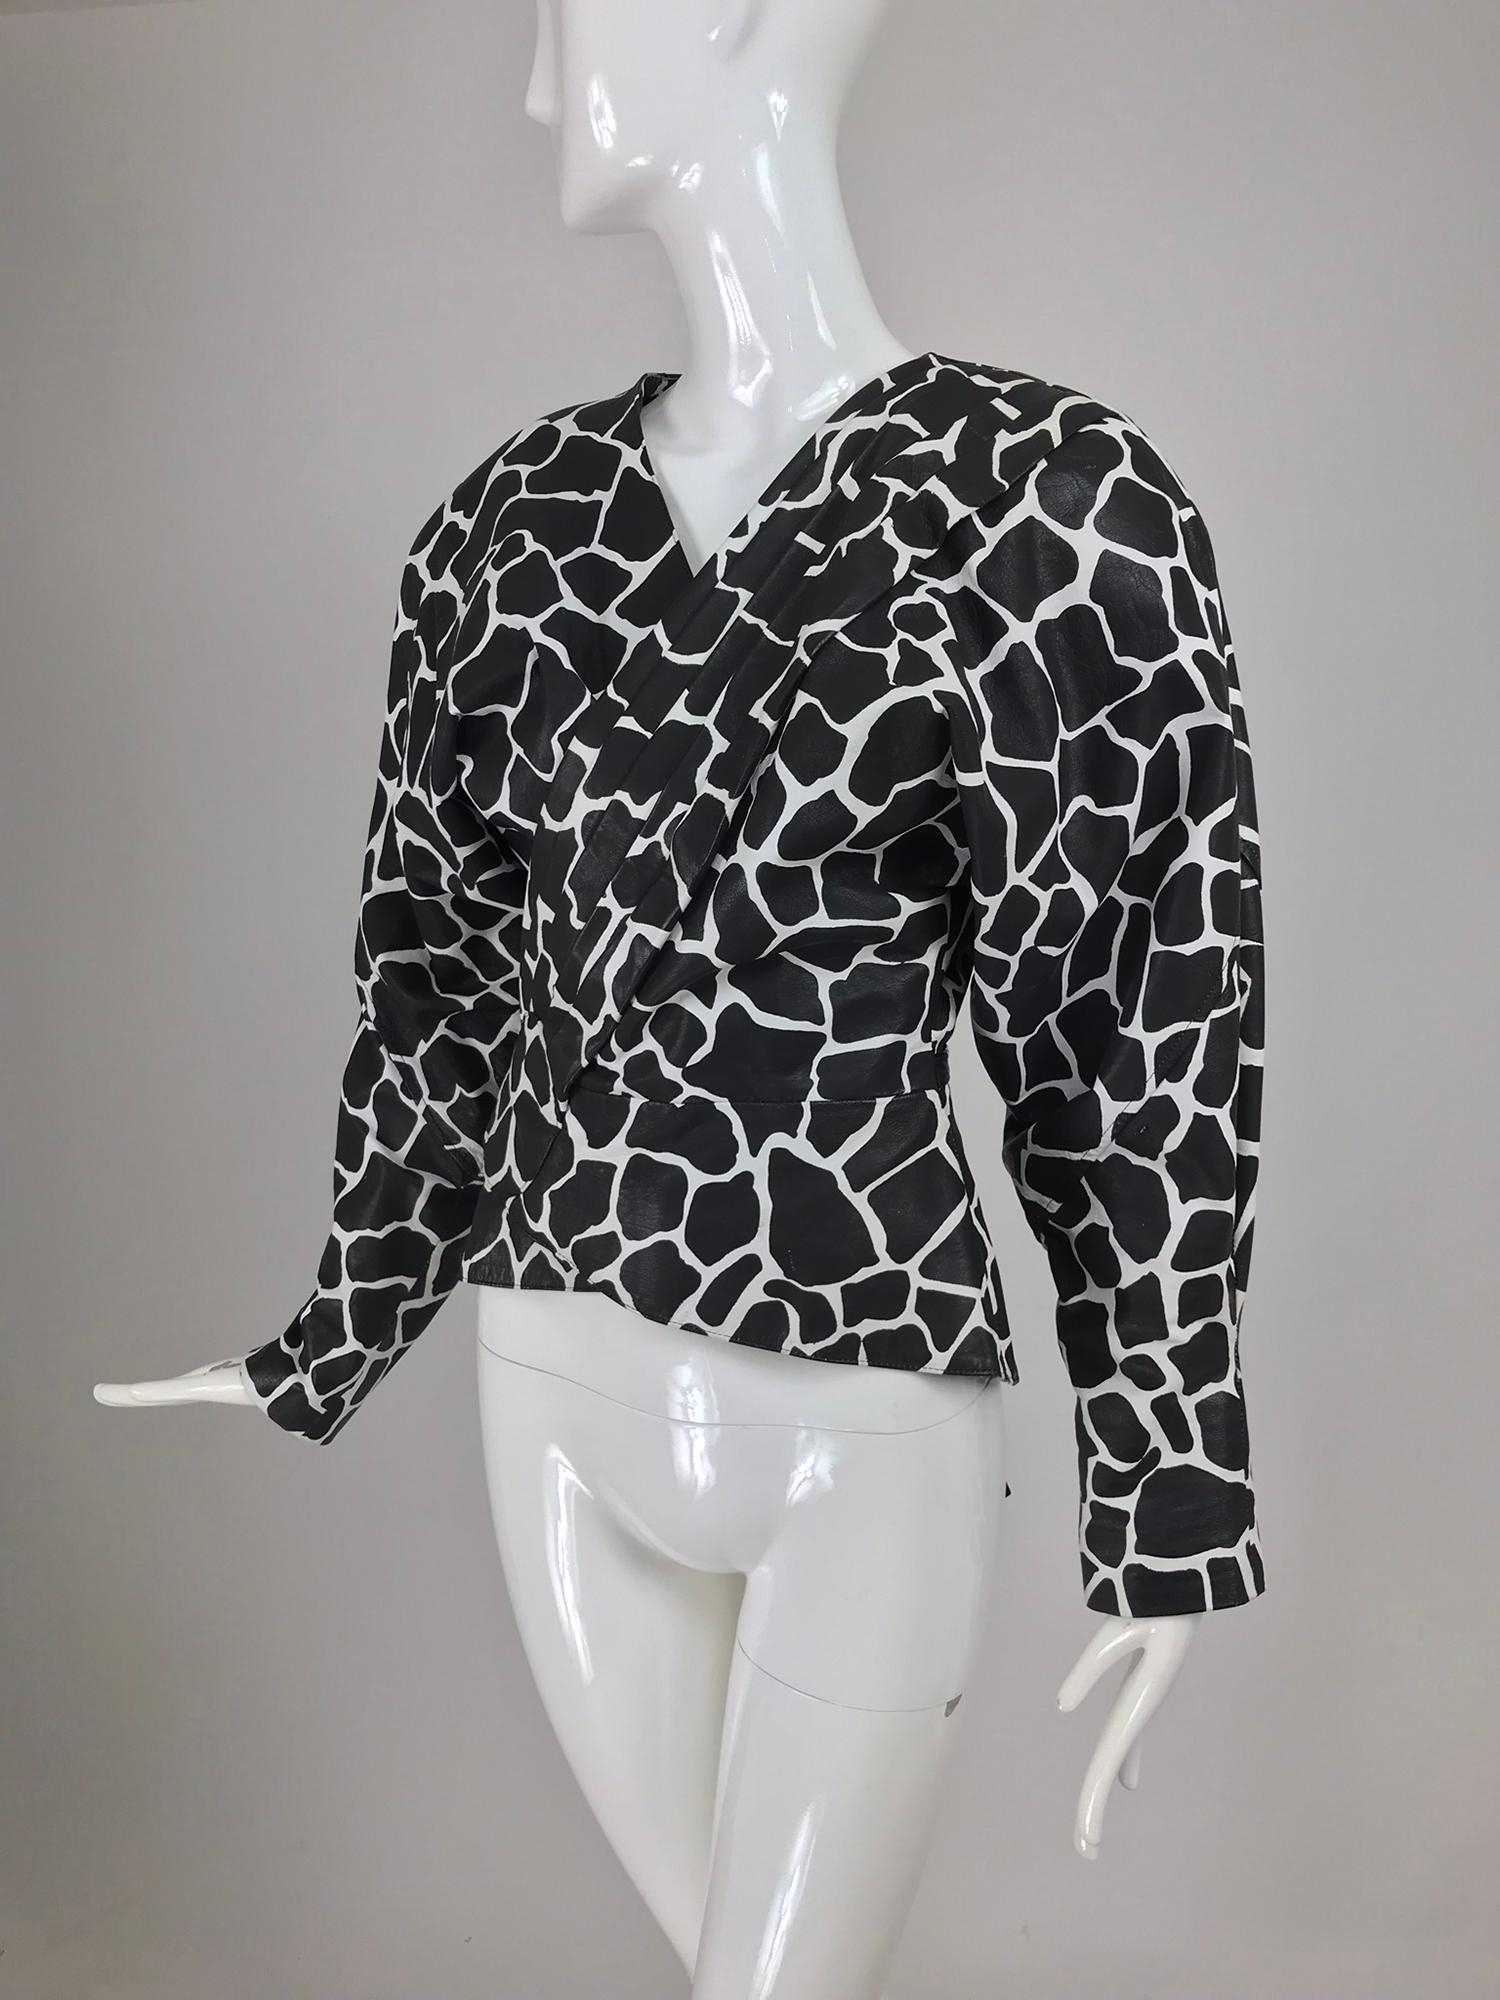 Jean Claude Jitrois schwarz-weiße Lederwickeljacke aus den 1980er Jahren. Die Jacke aus schwarzem und weißem Leder mit Tier-/Giraffendruck wird vorne umgeschlagen und in der Taille mit einem Schößchen geschnürt. Gepolsterte Schulter, Dolman-Ärmel,